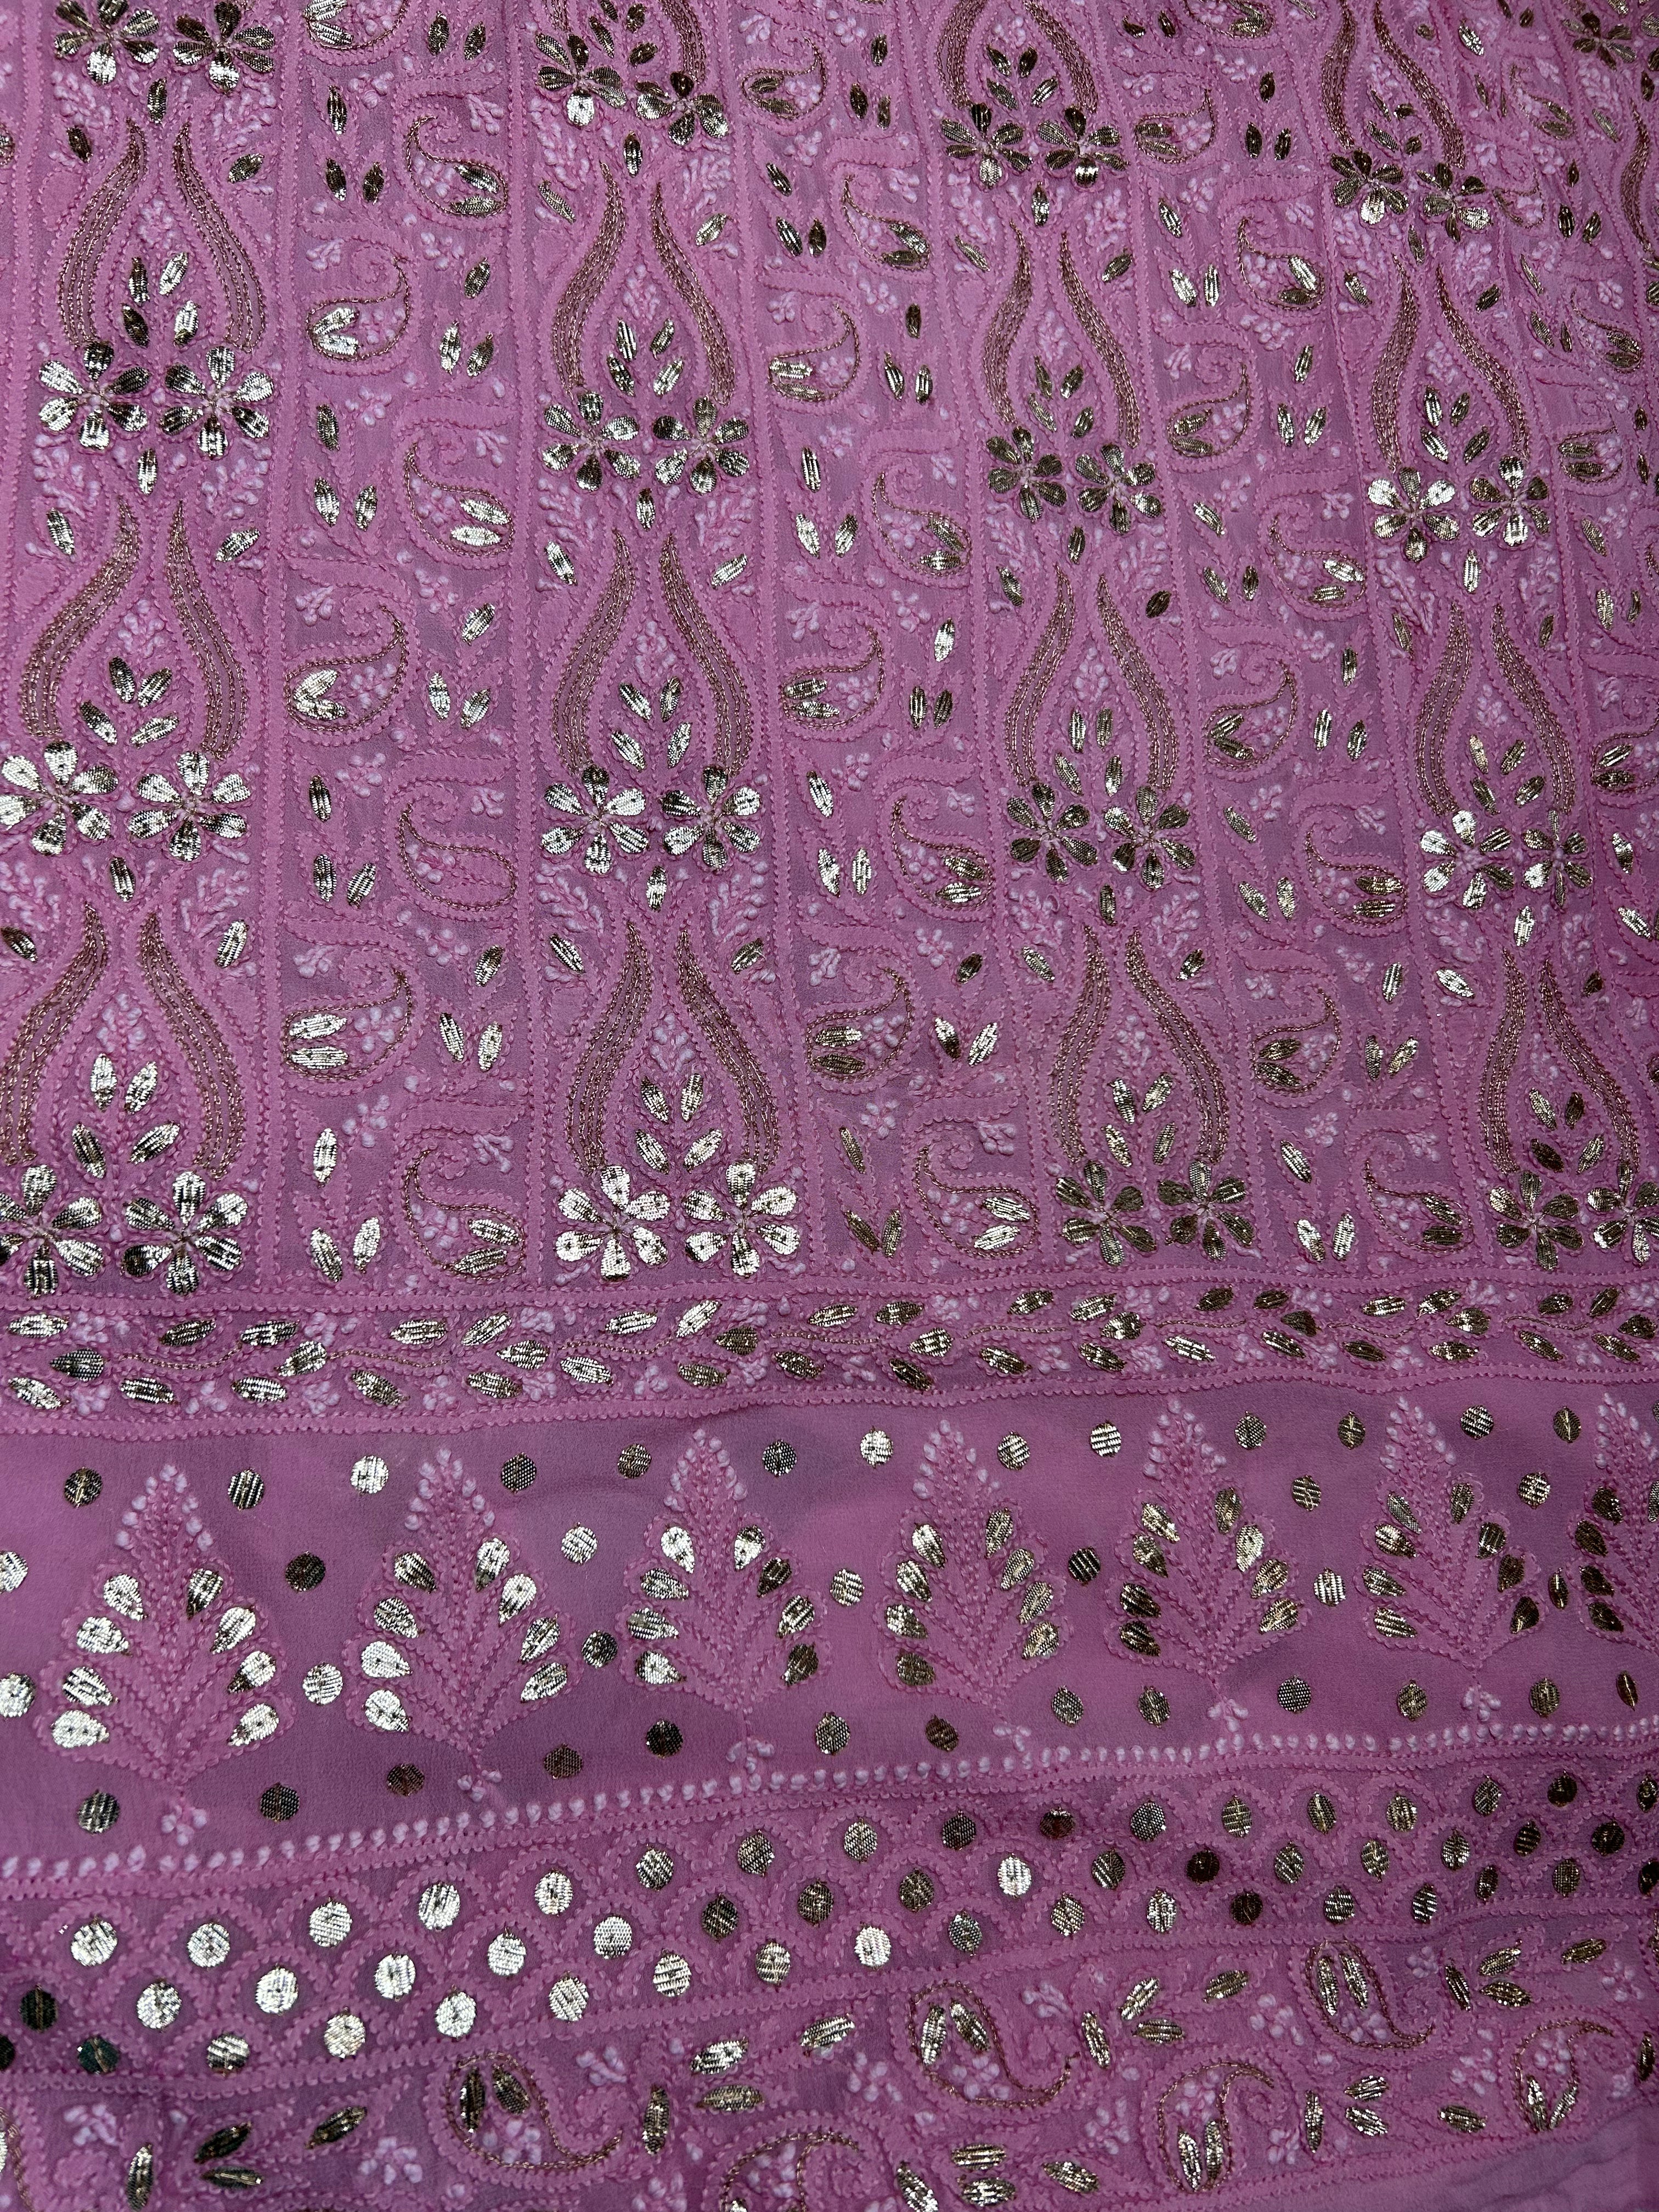 Salmon Pink Chikankari Gota Patti Salwar Kameez Fabric